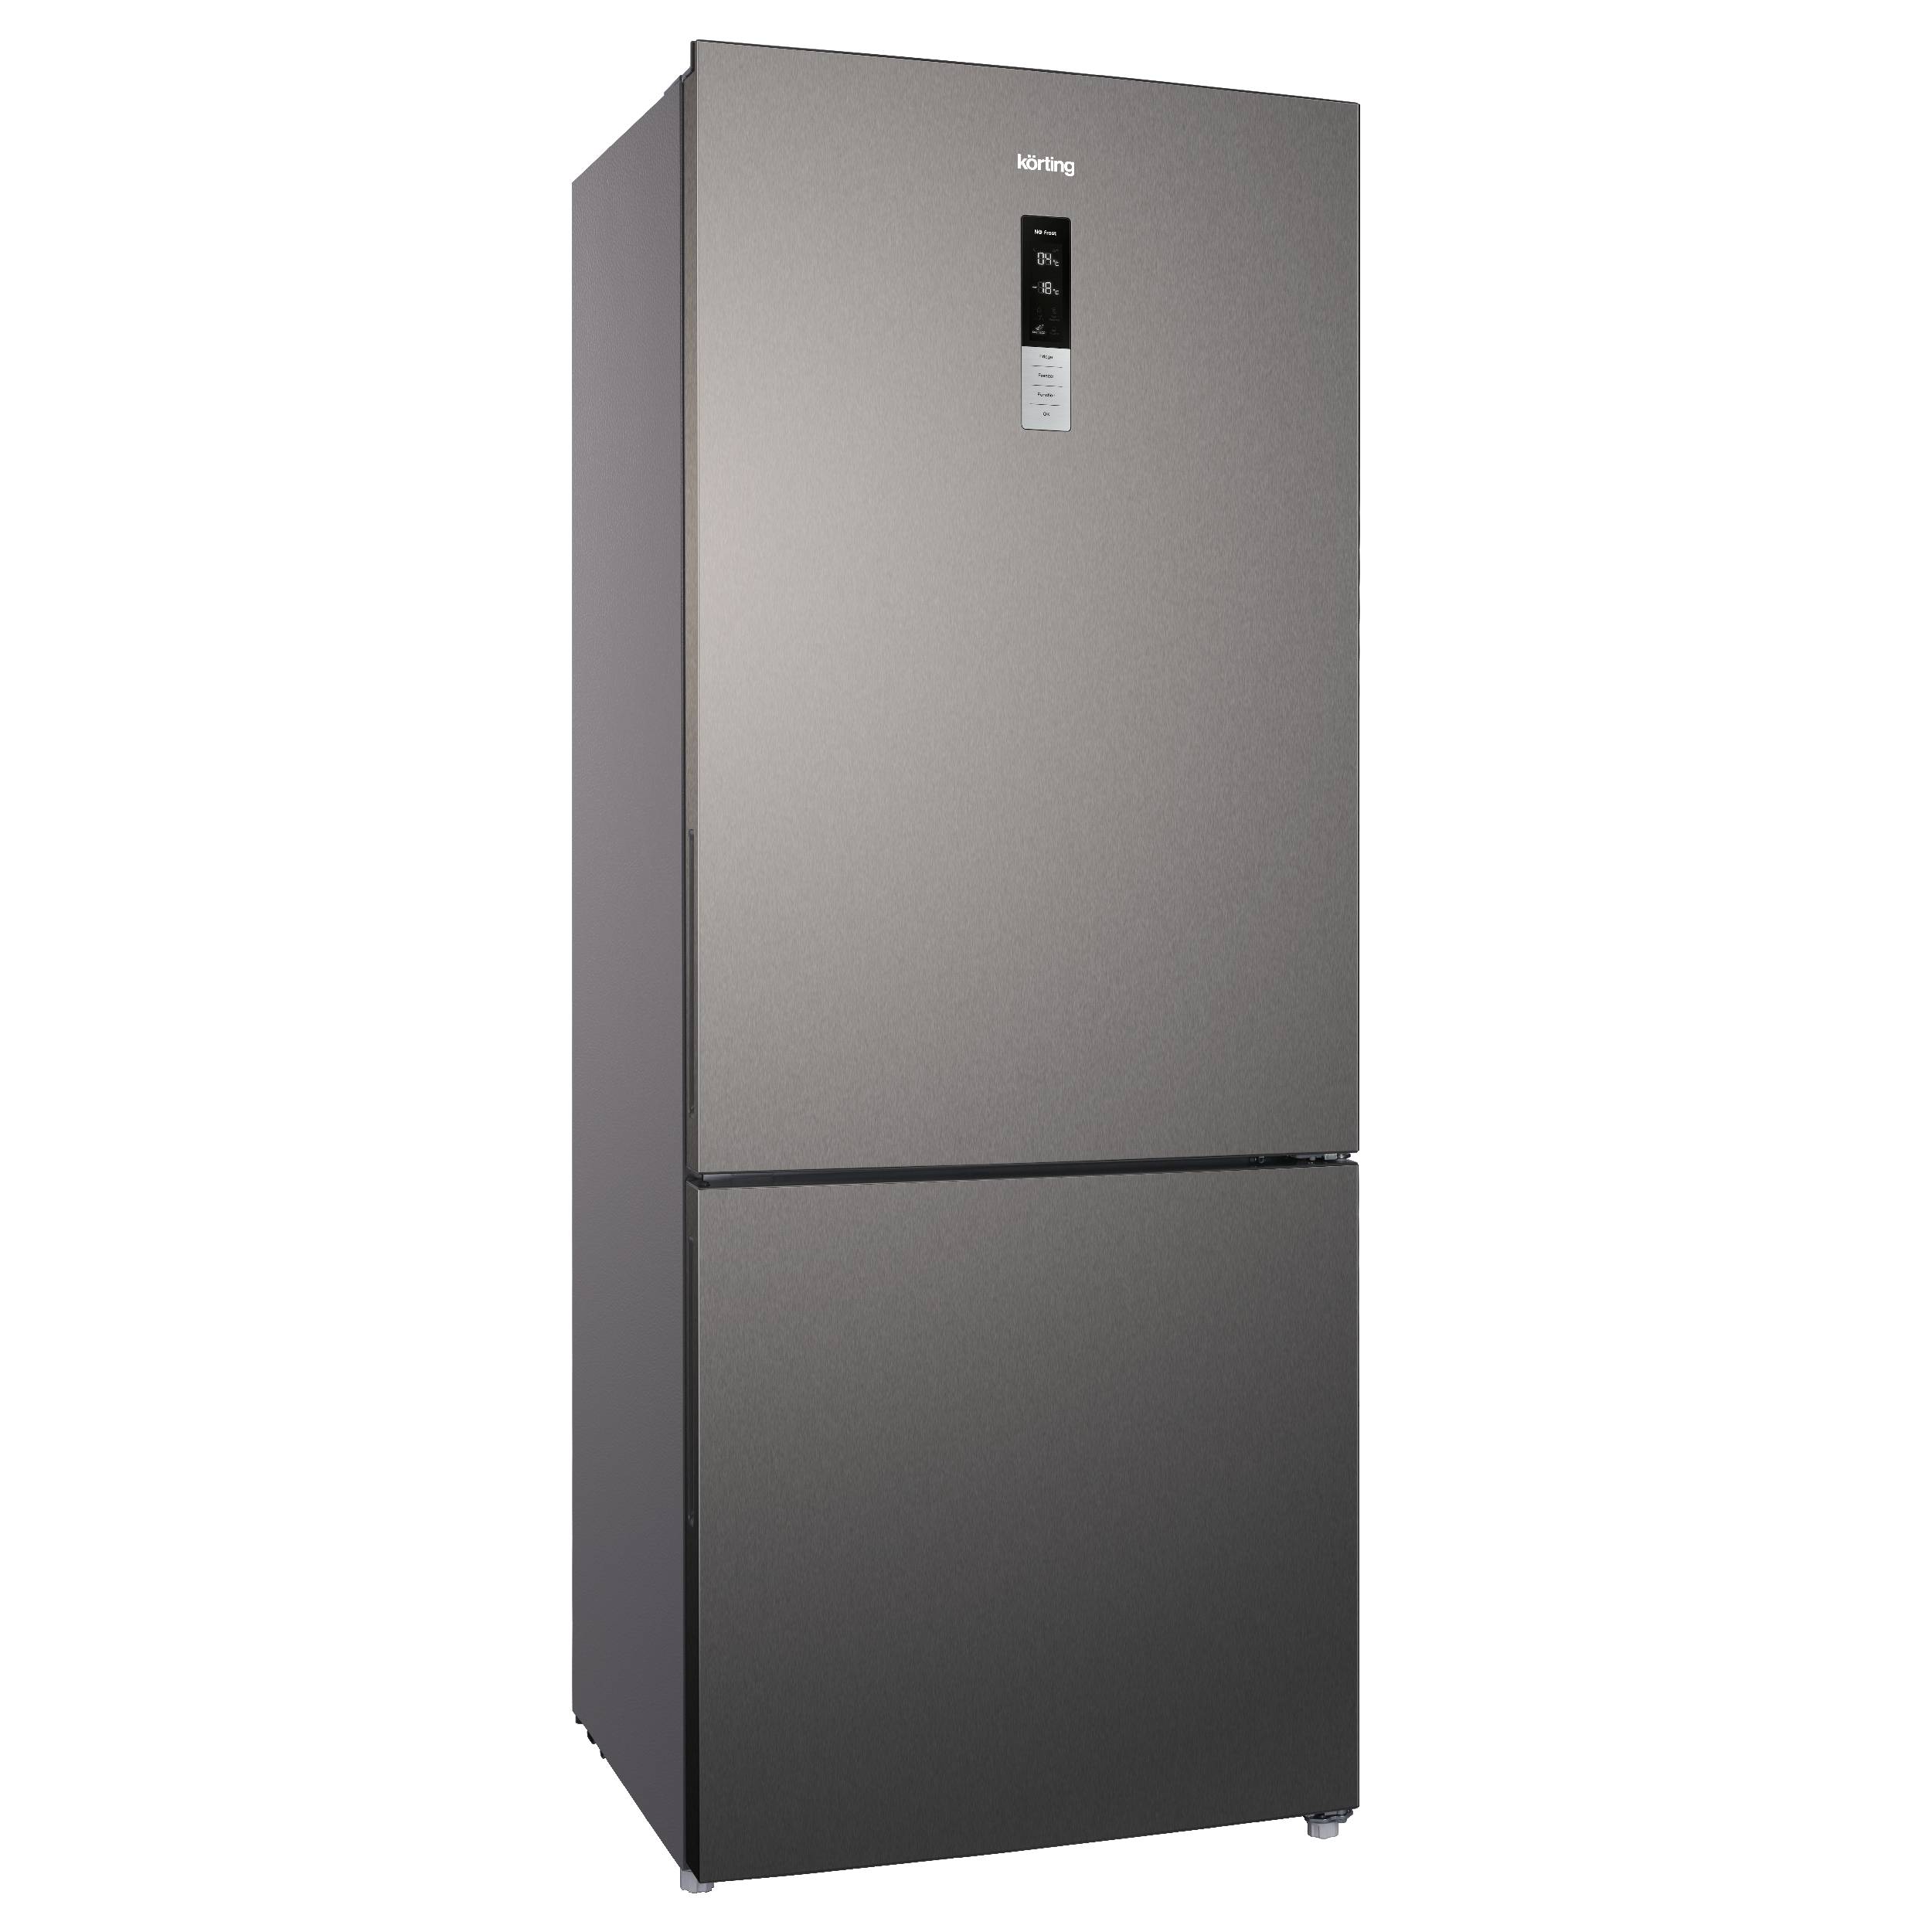 Холодильник Korting KNFC 72337 X серебристый, серый цифровой продукт лицензионный ключ kids protection 1 устройство 6 мес